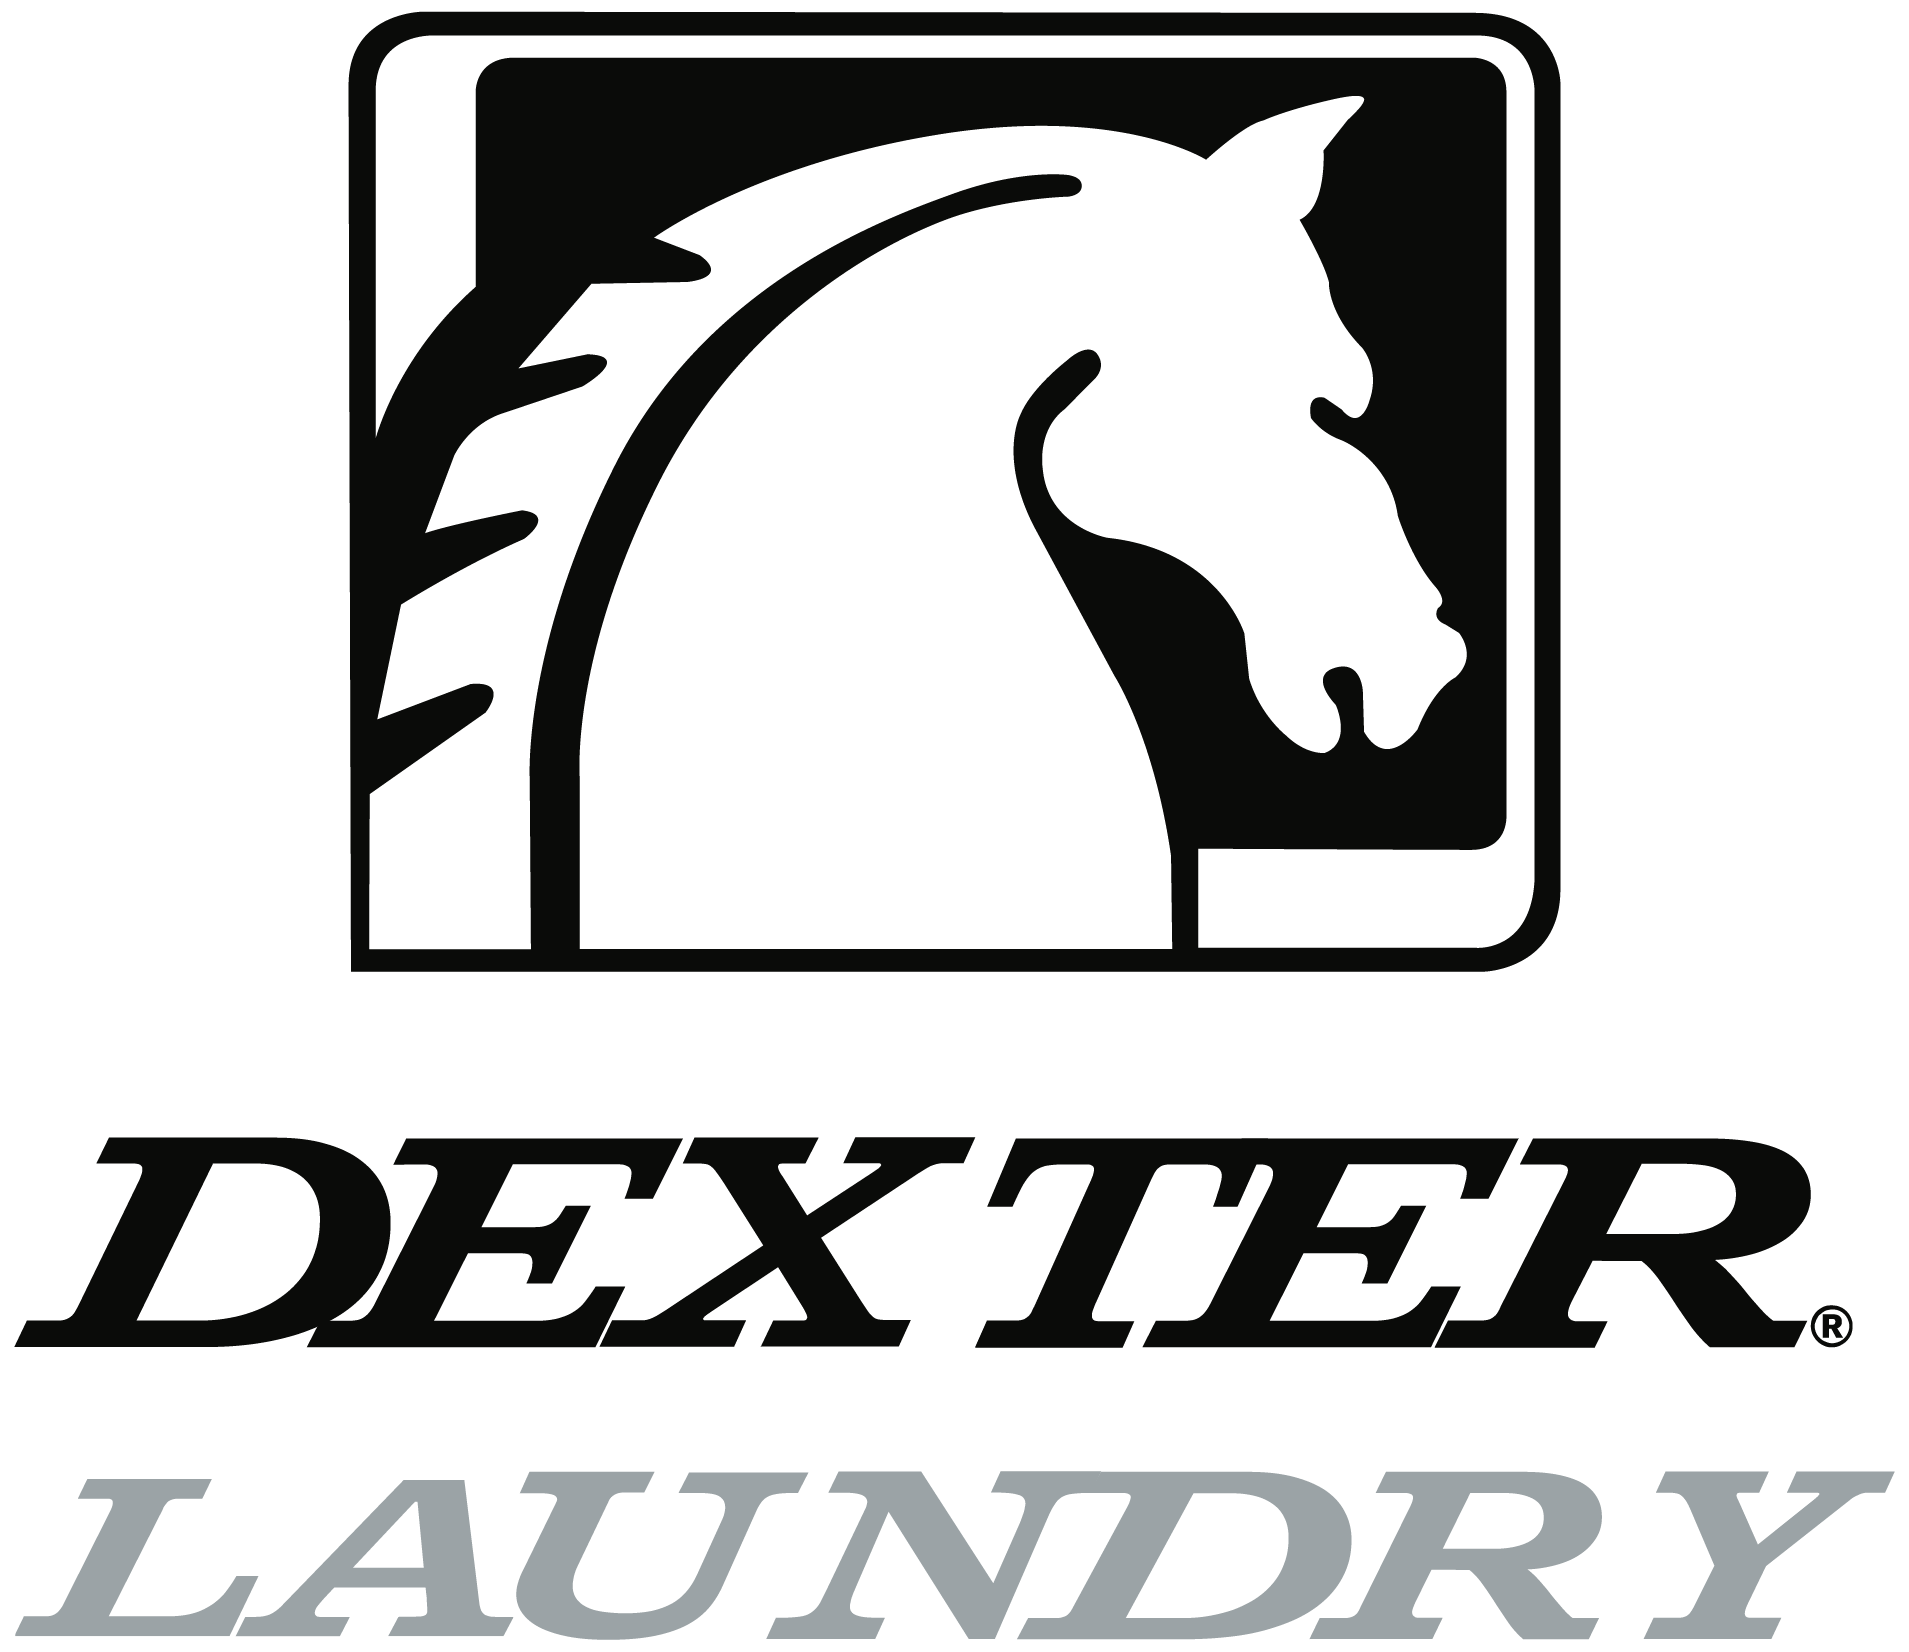 Dexter Laundry